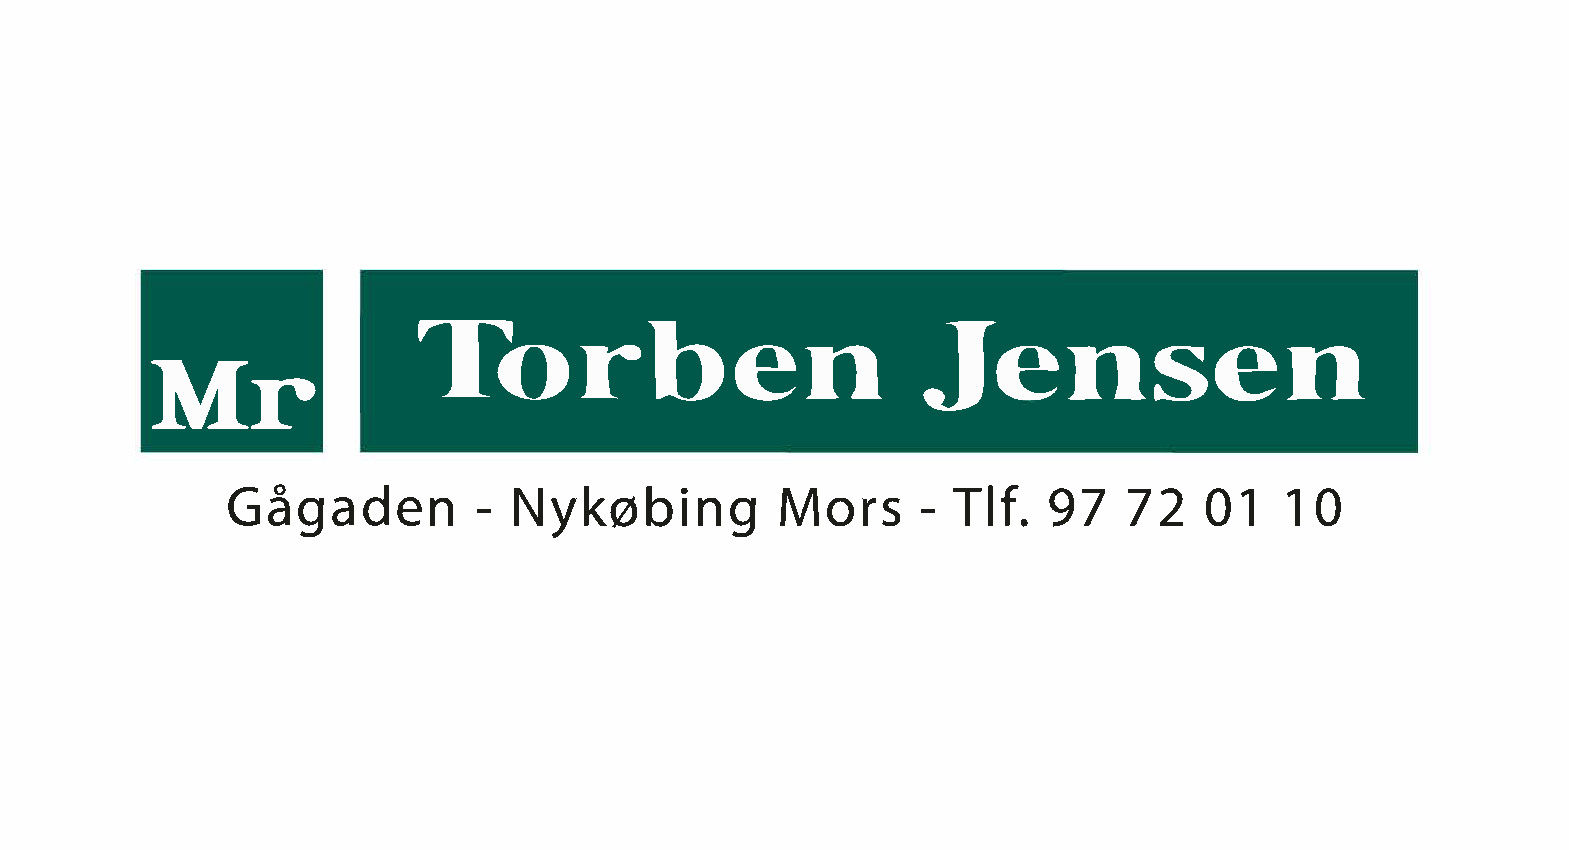 Mr Torben Jensen.jpg